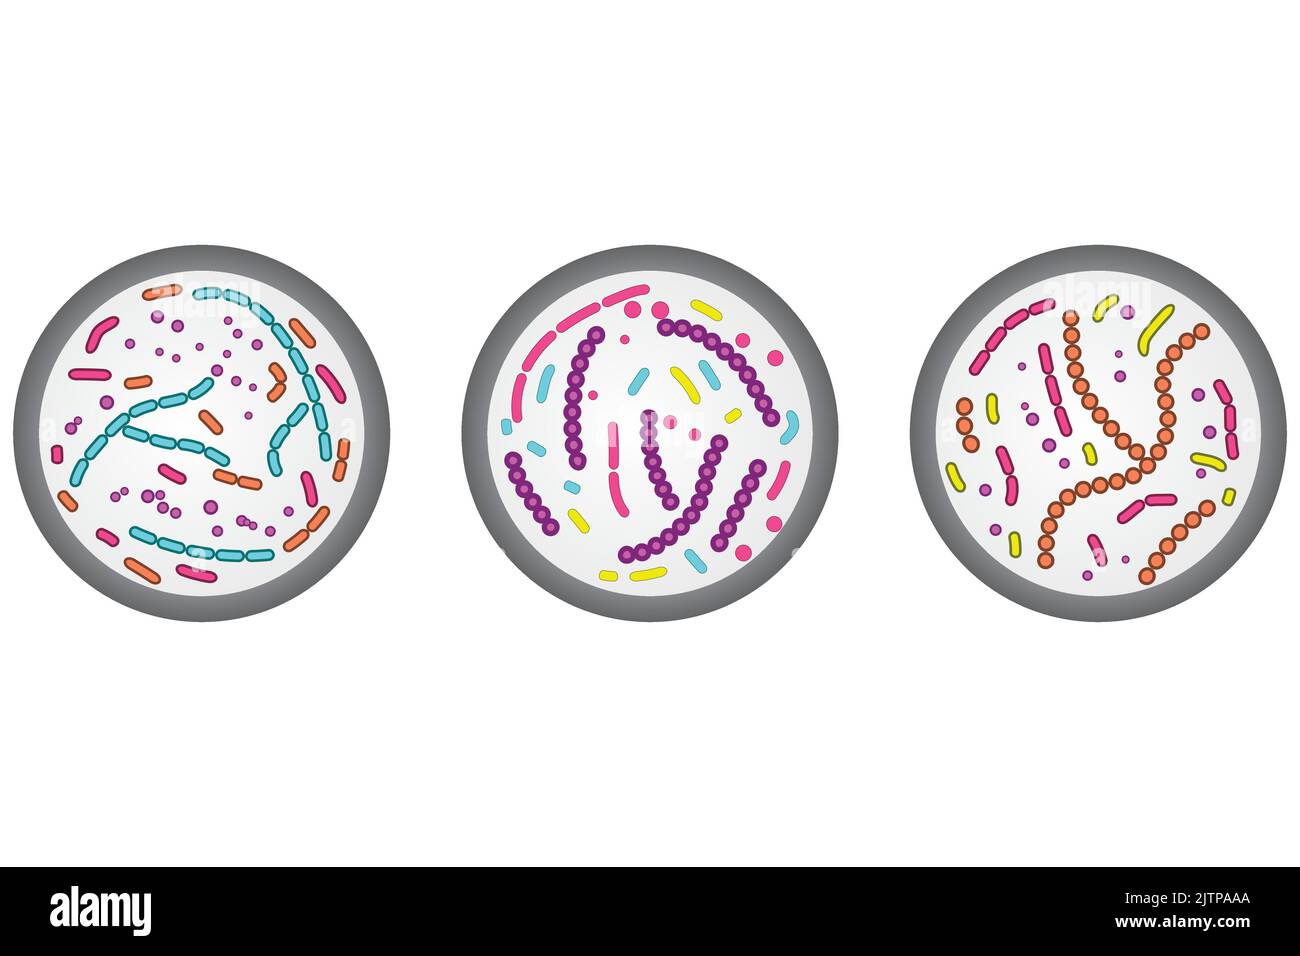 Set mit 3 Petrischalen-Symbolen. Farbenfrohe, einfache Illustration mit Bakterienzellen. Stock Vektor